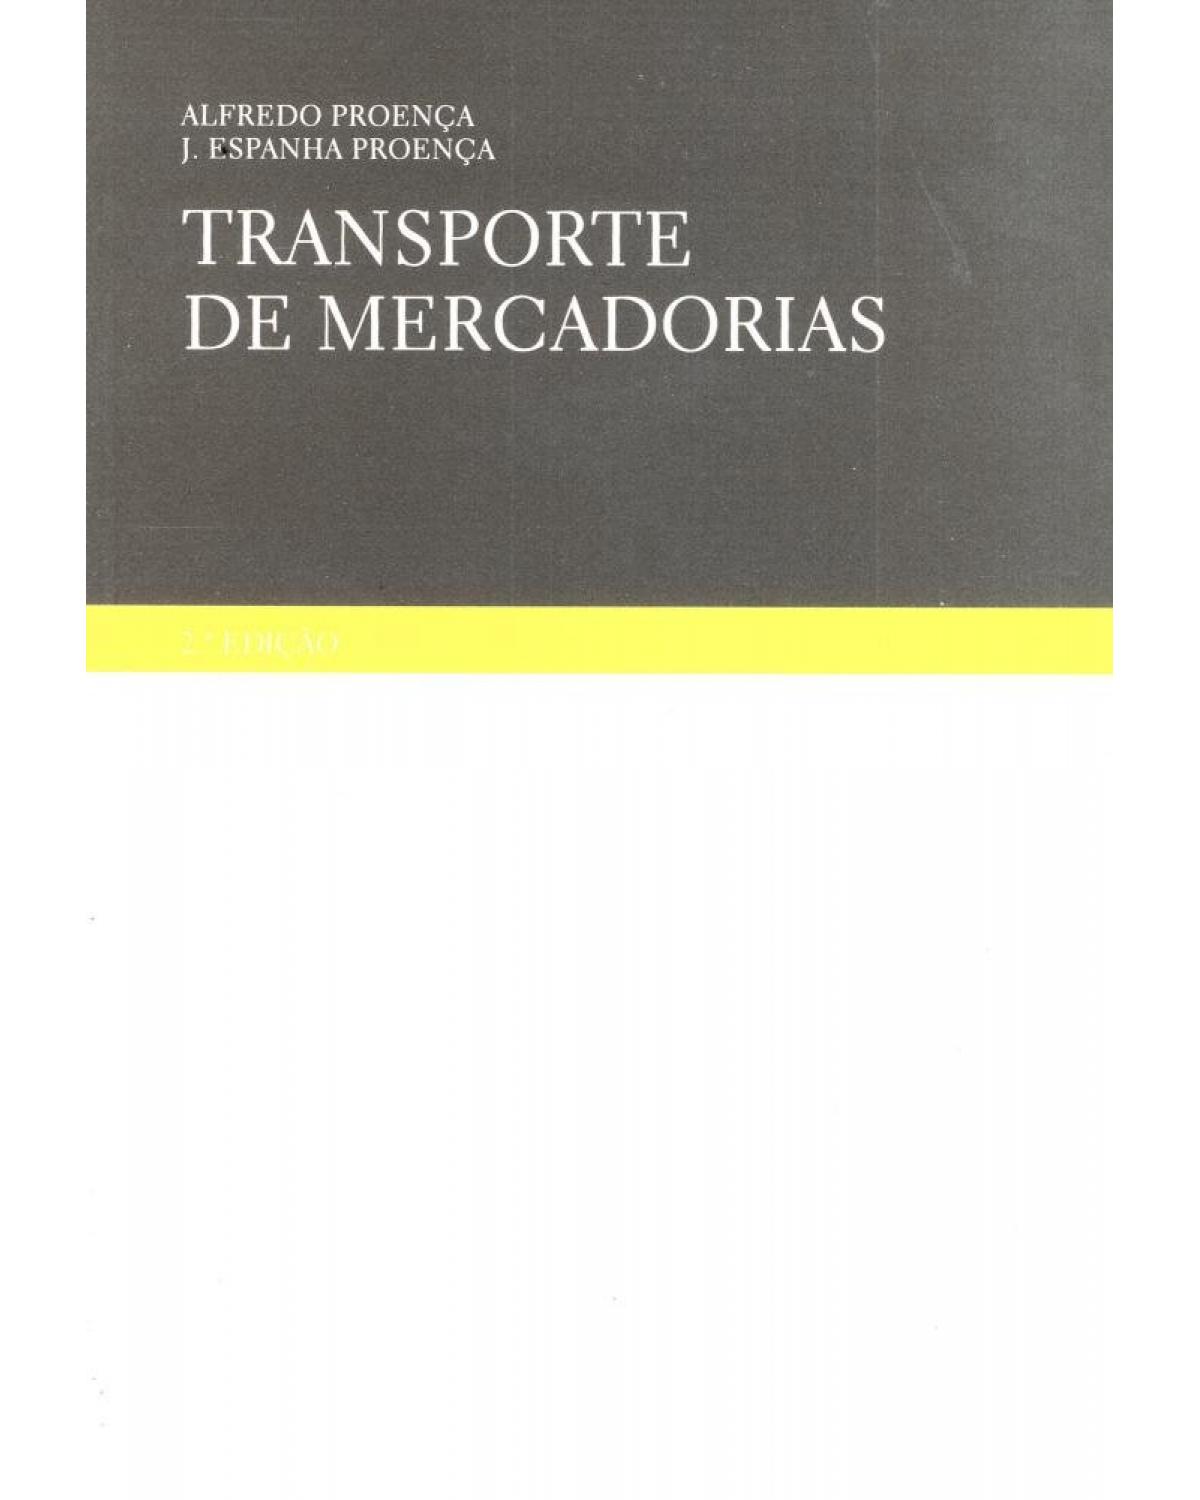 Transporte de mercadorias - 1ª Edição | 2004